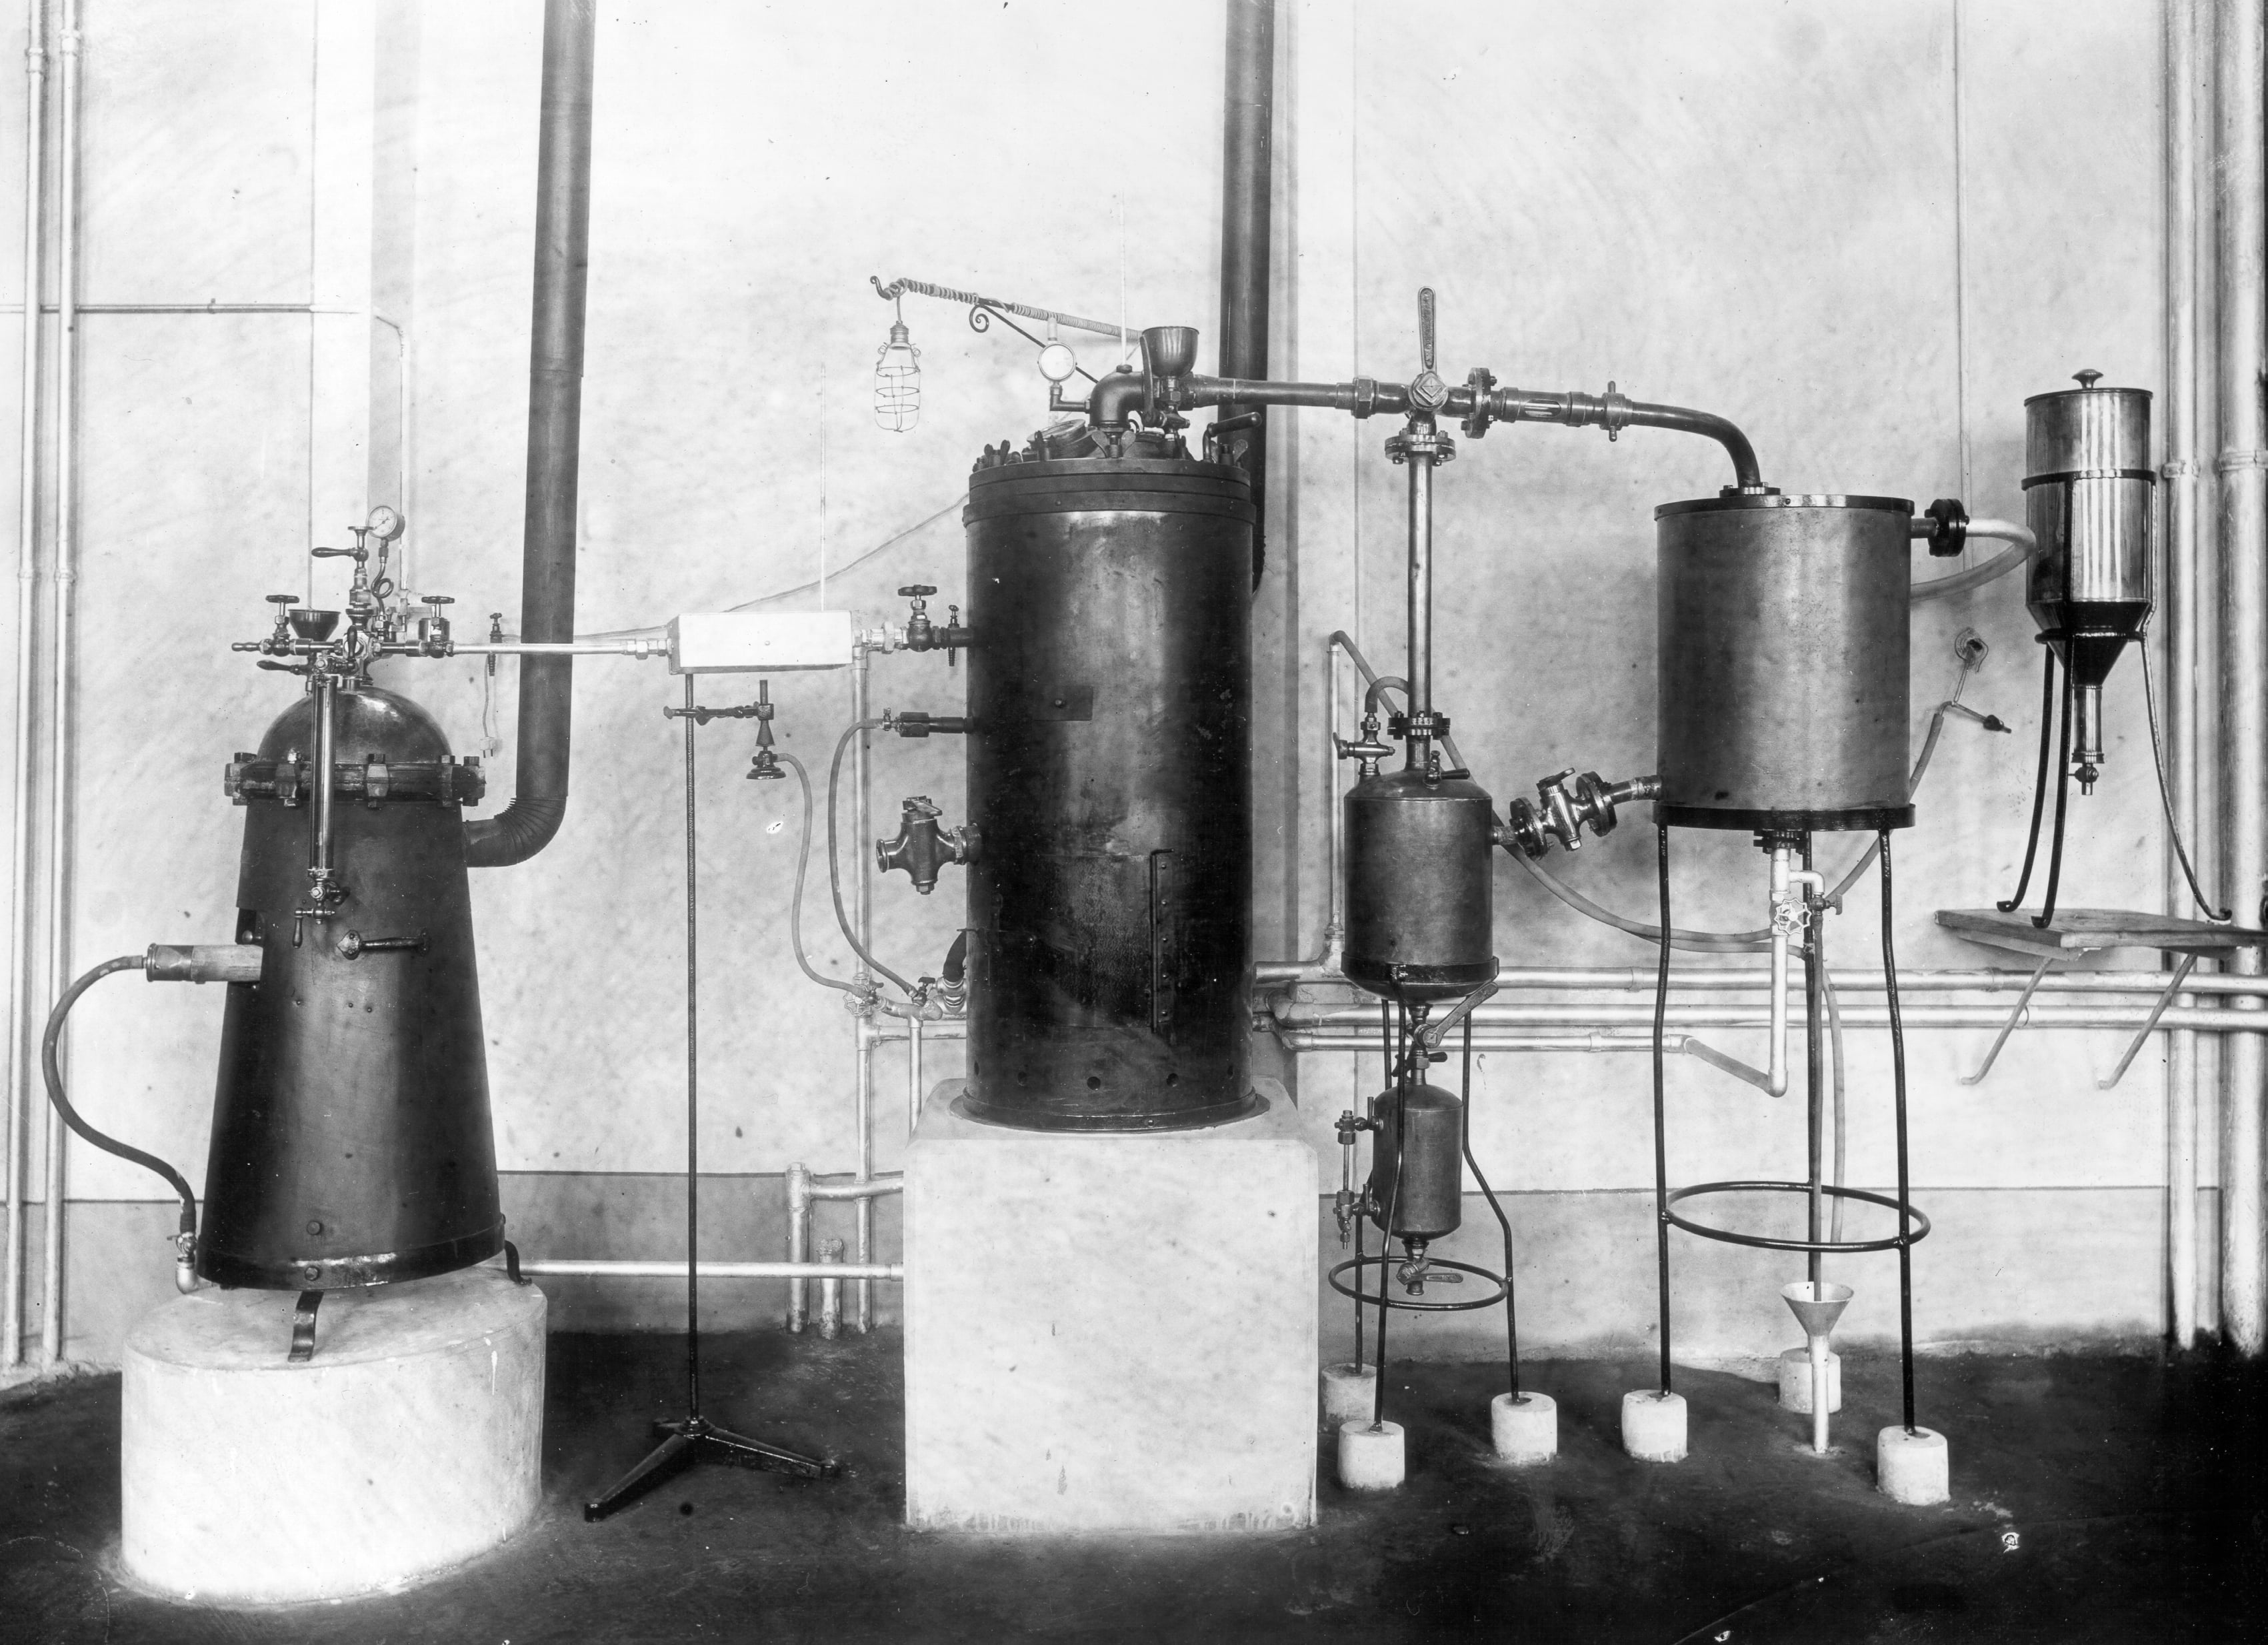 Girolamo Bombelli, Martini & Rossi - Reparto distillatori - attualmente magazzino scorte / Stabilimenti di Pessione (TO), 1951-2000, gelatina ai sali d'argento/vetro, E105334